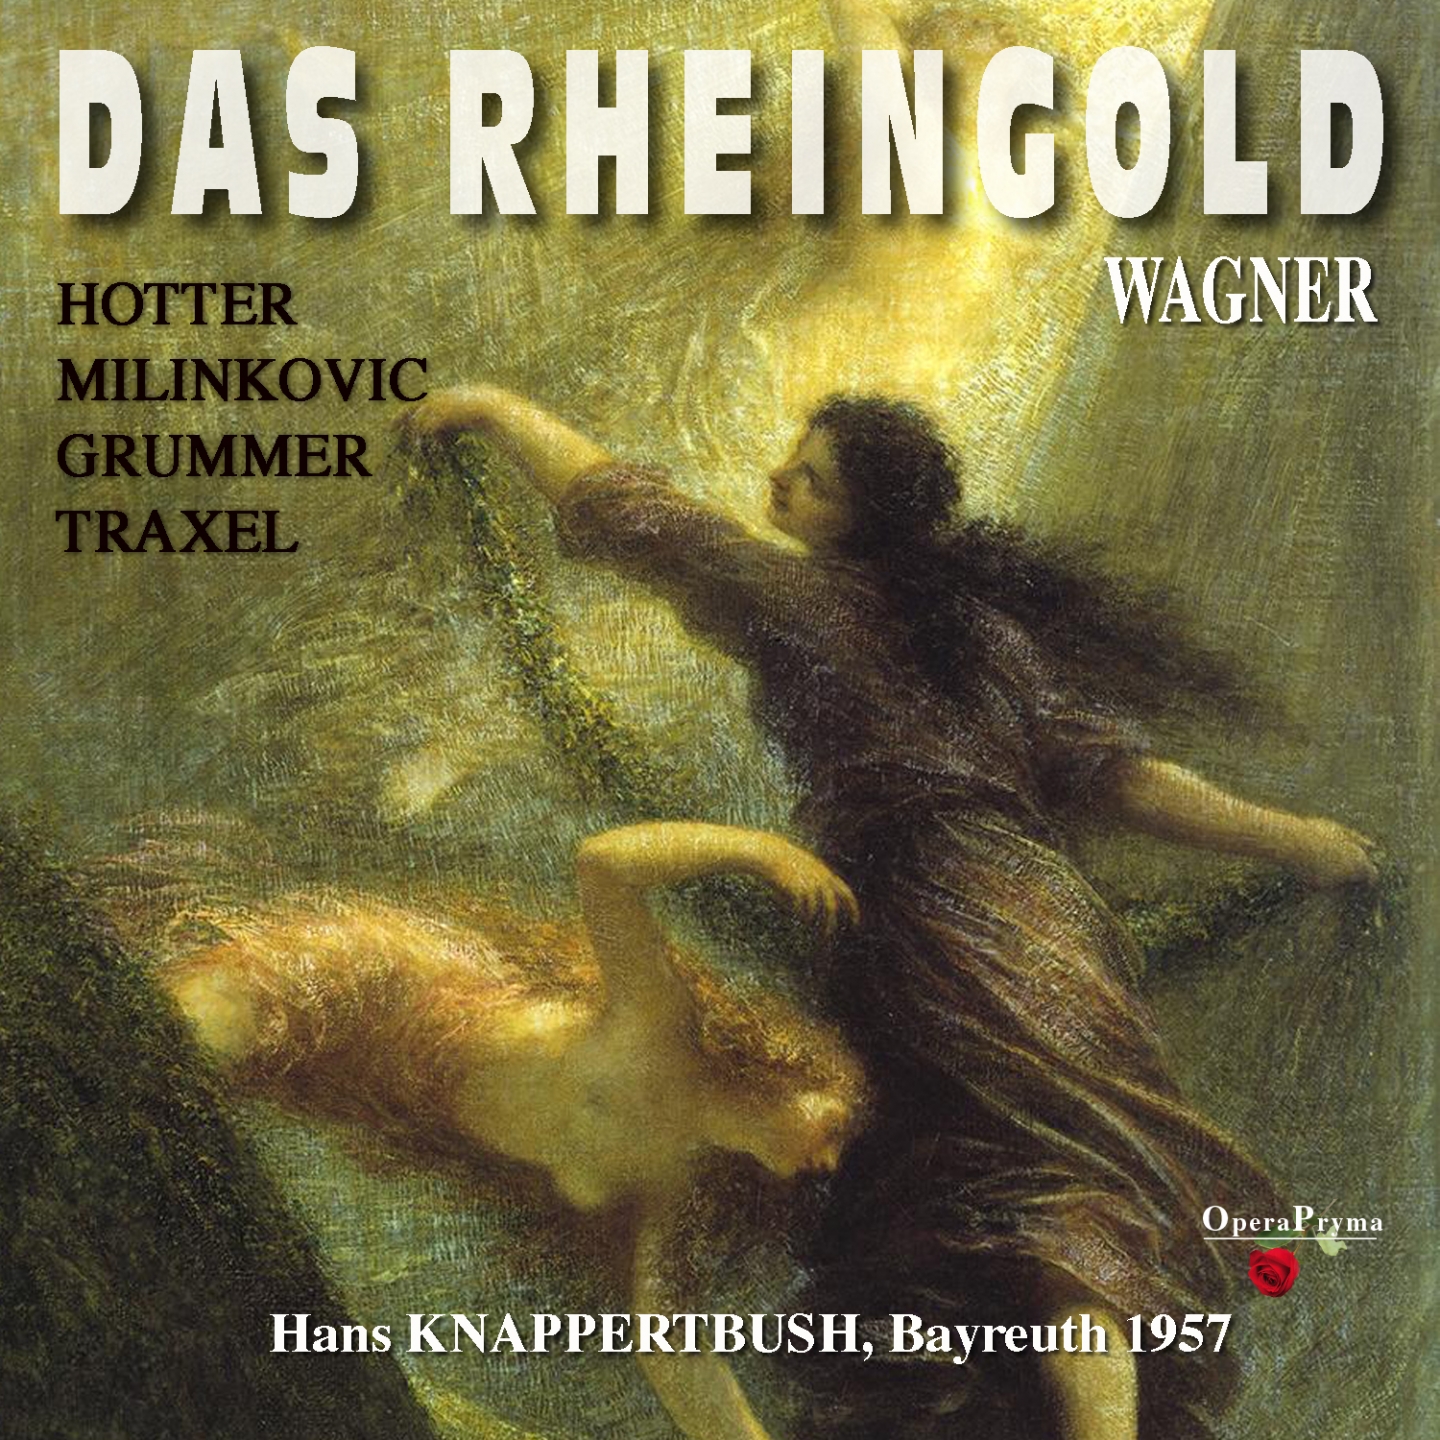 Das Rheingold, Scene 2: "Ihr andern harrt bis Abend hier" (Wotan, Donner, Froh, Fricka)